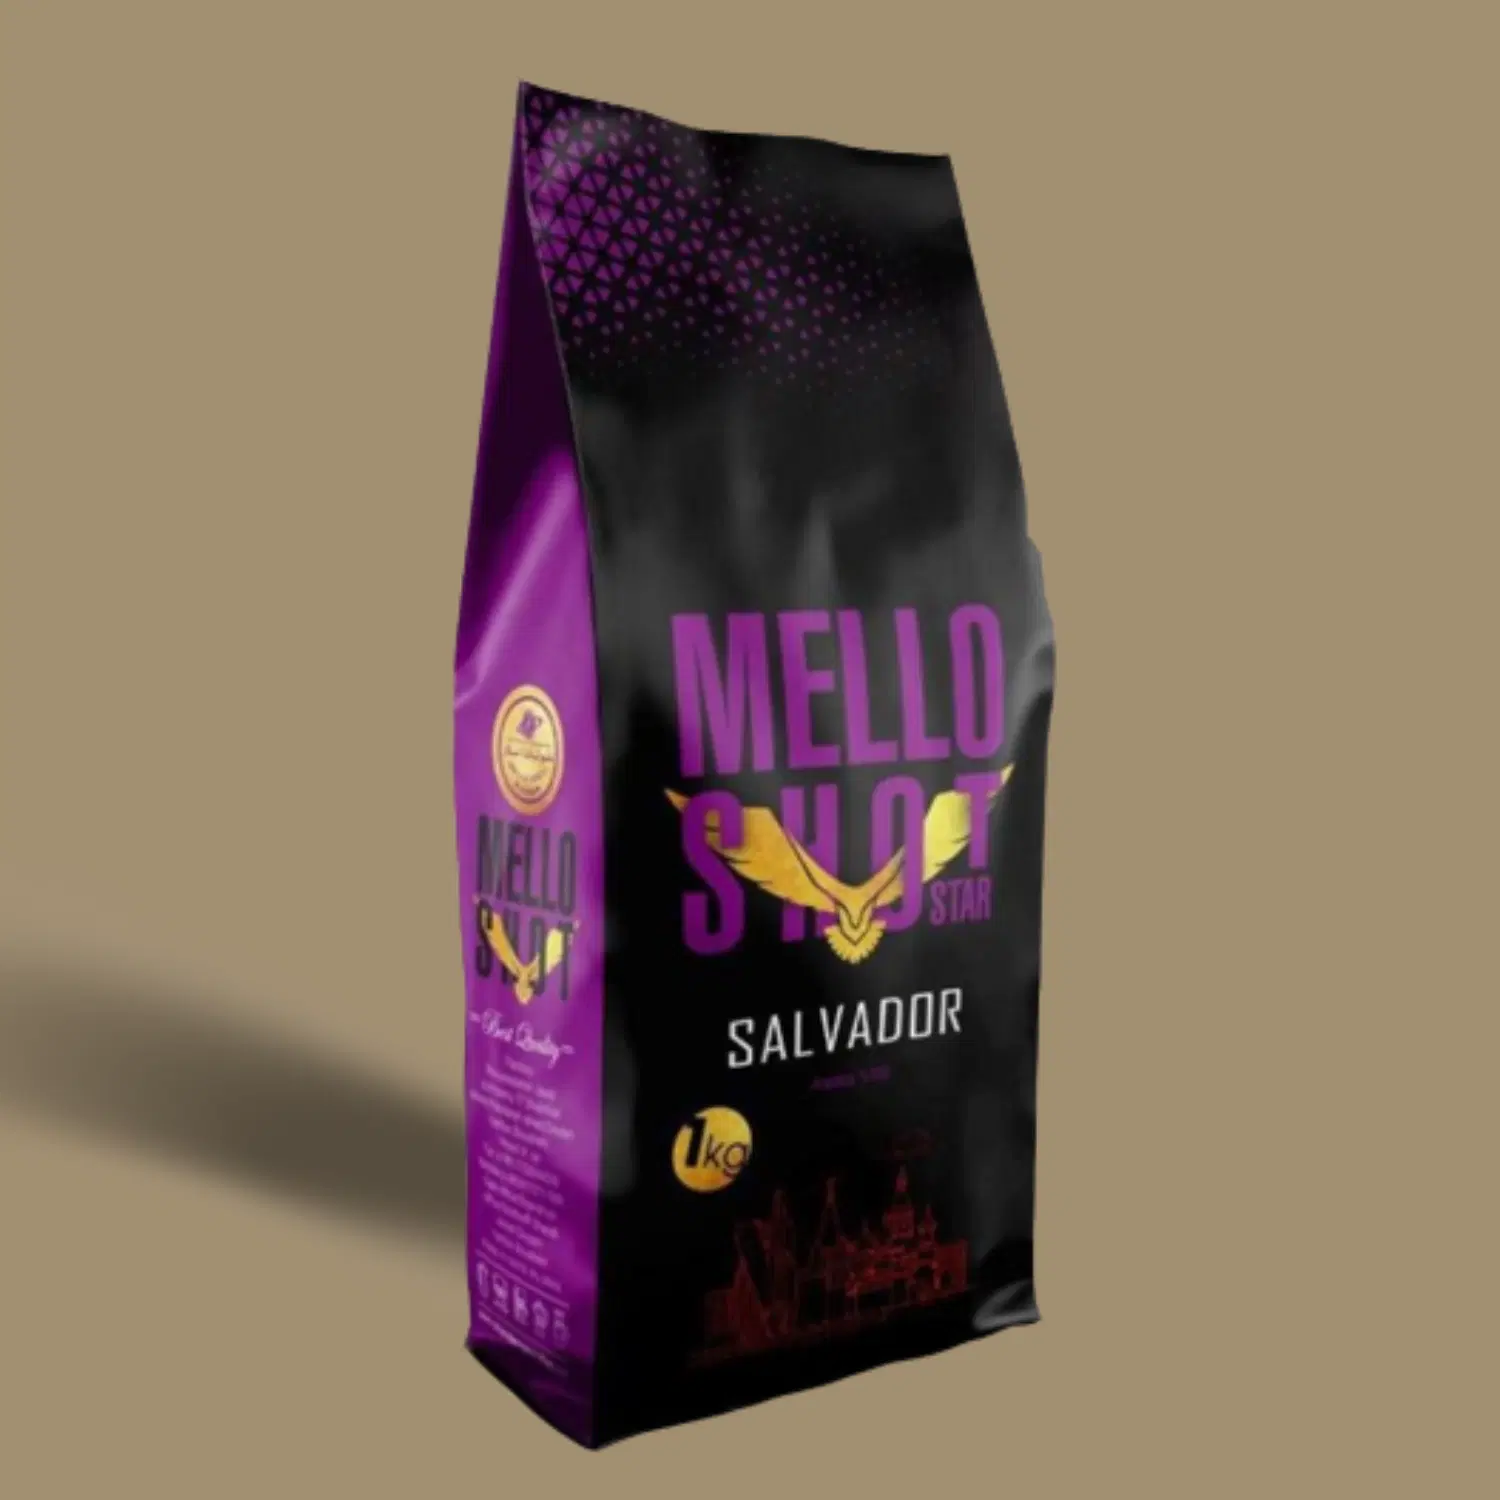 قهوه ملوشات بنفش سالوادور